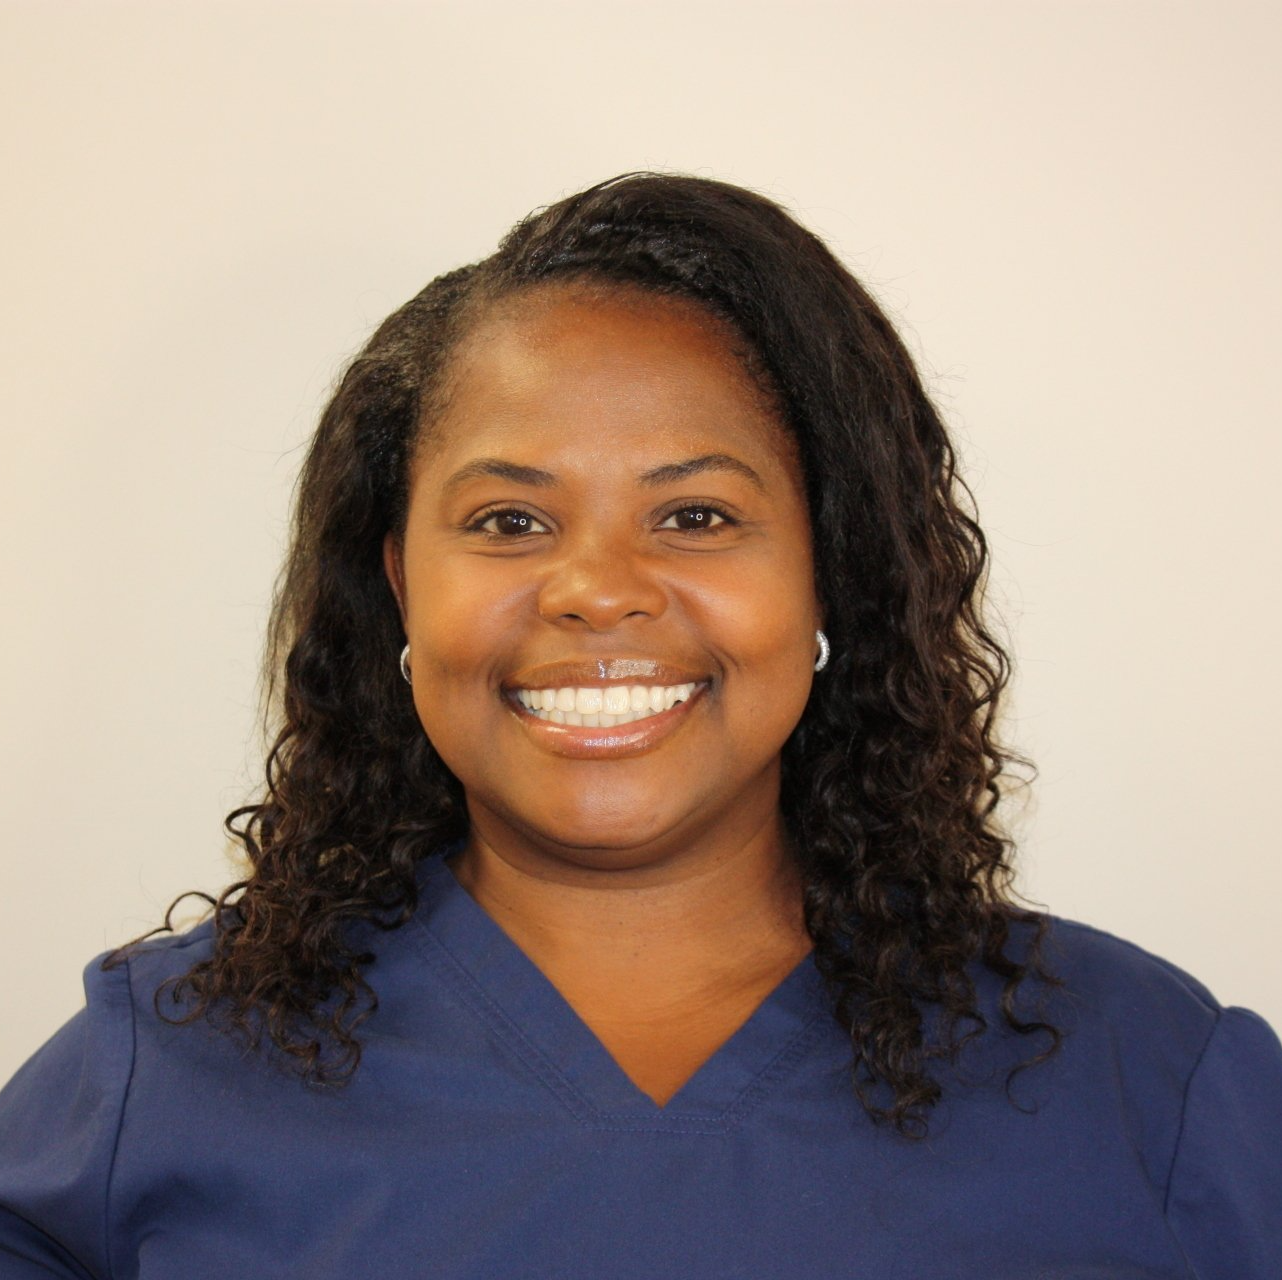 Latifah Dental Assistant at Sewell Dental Design